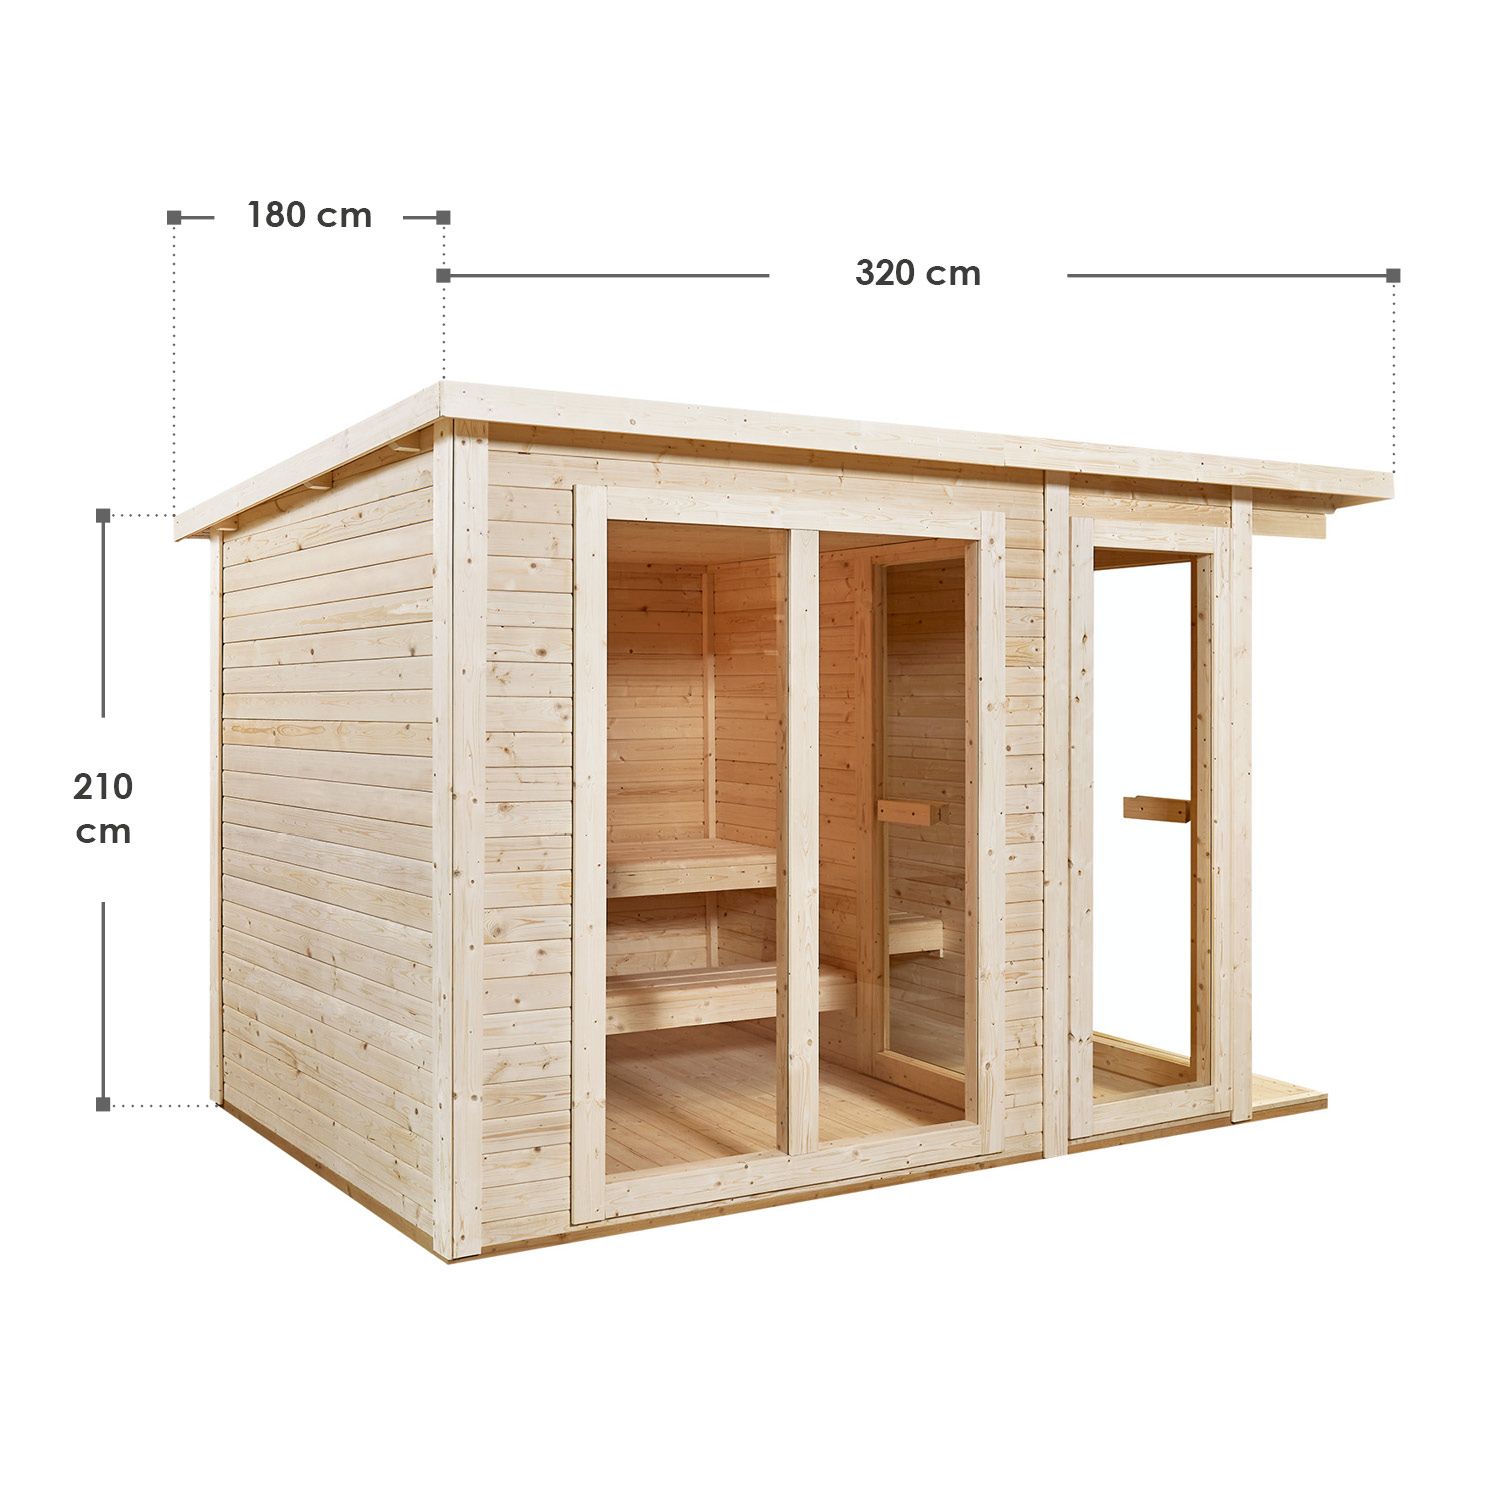 Abmessungsbild Outdoor Sauna Varberg in 3 Größen